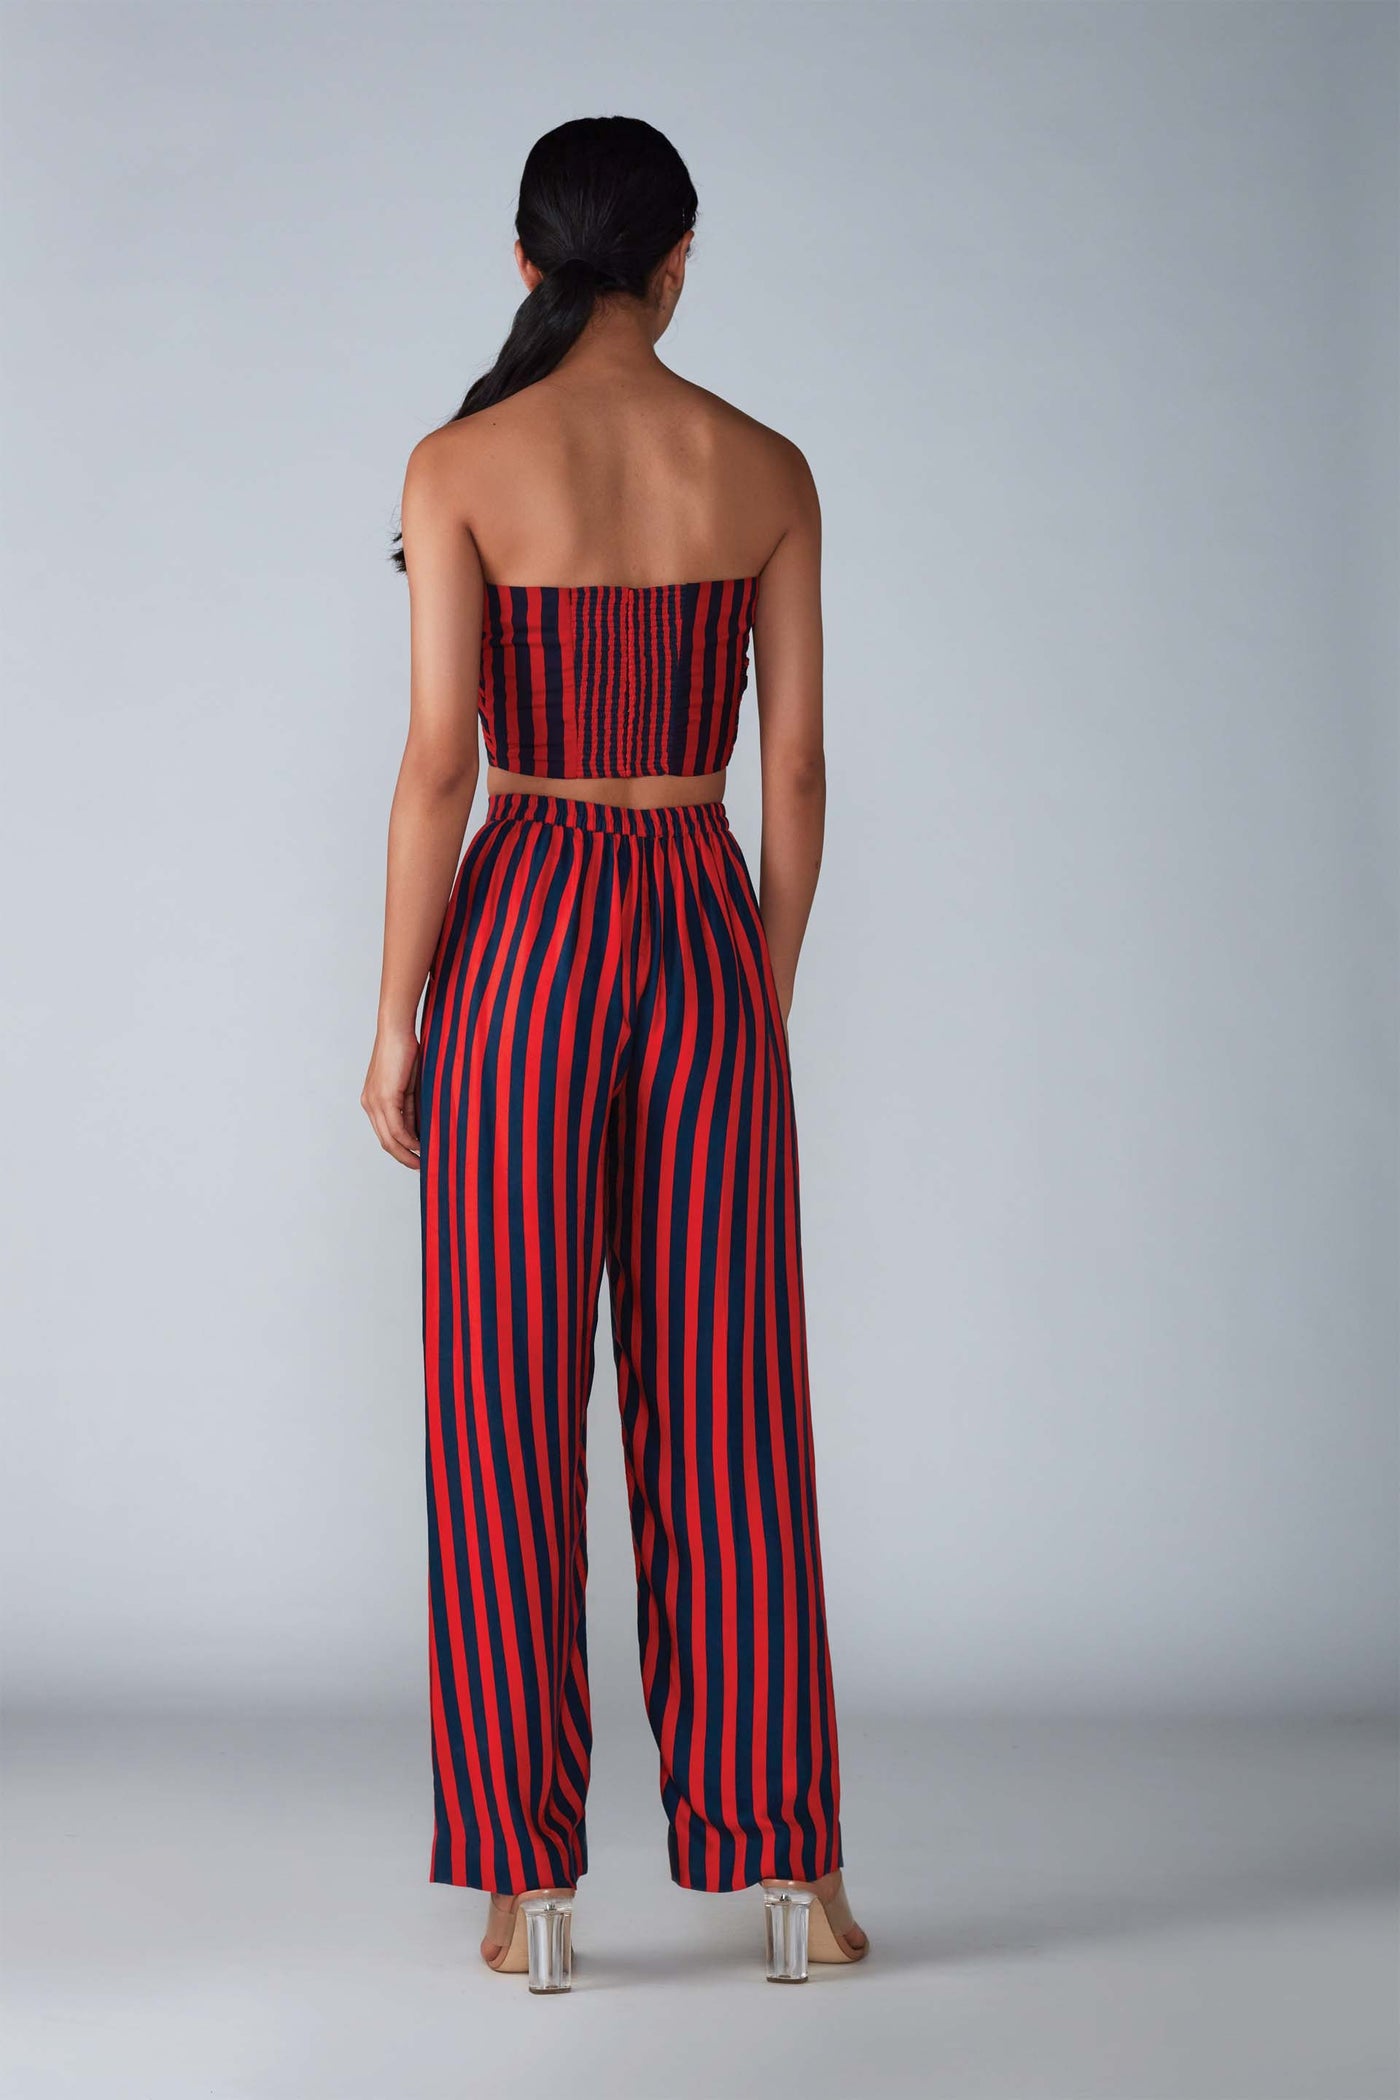 Saaksha & Kinni Stripe Print Bustier indian designer womenswear fashion online shopping melange singapore